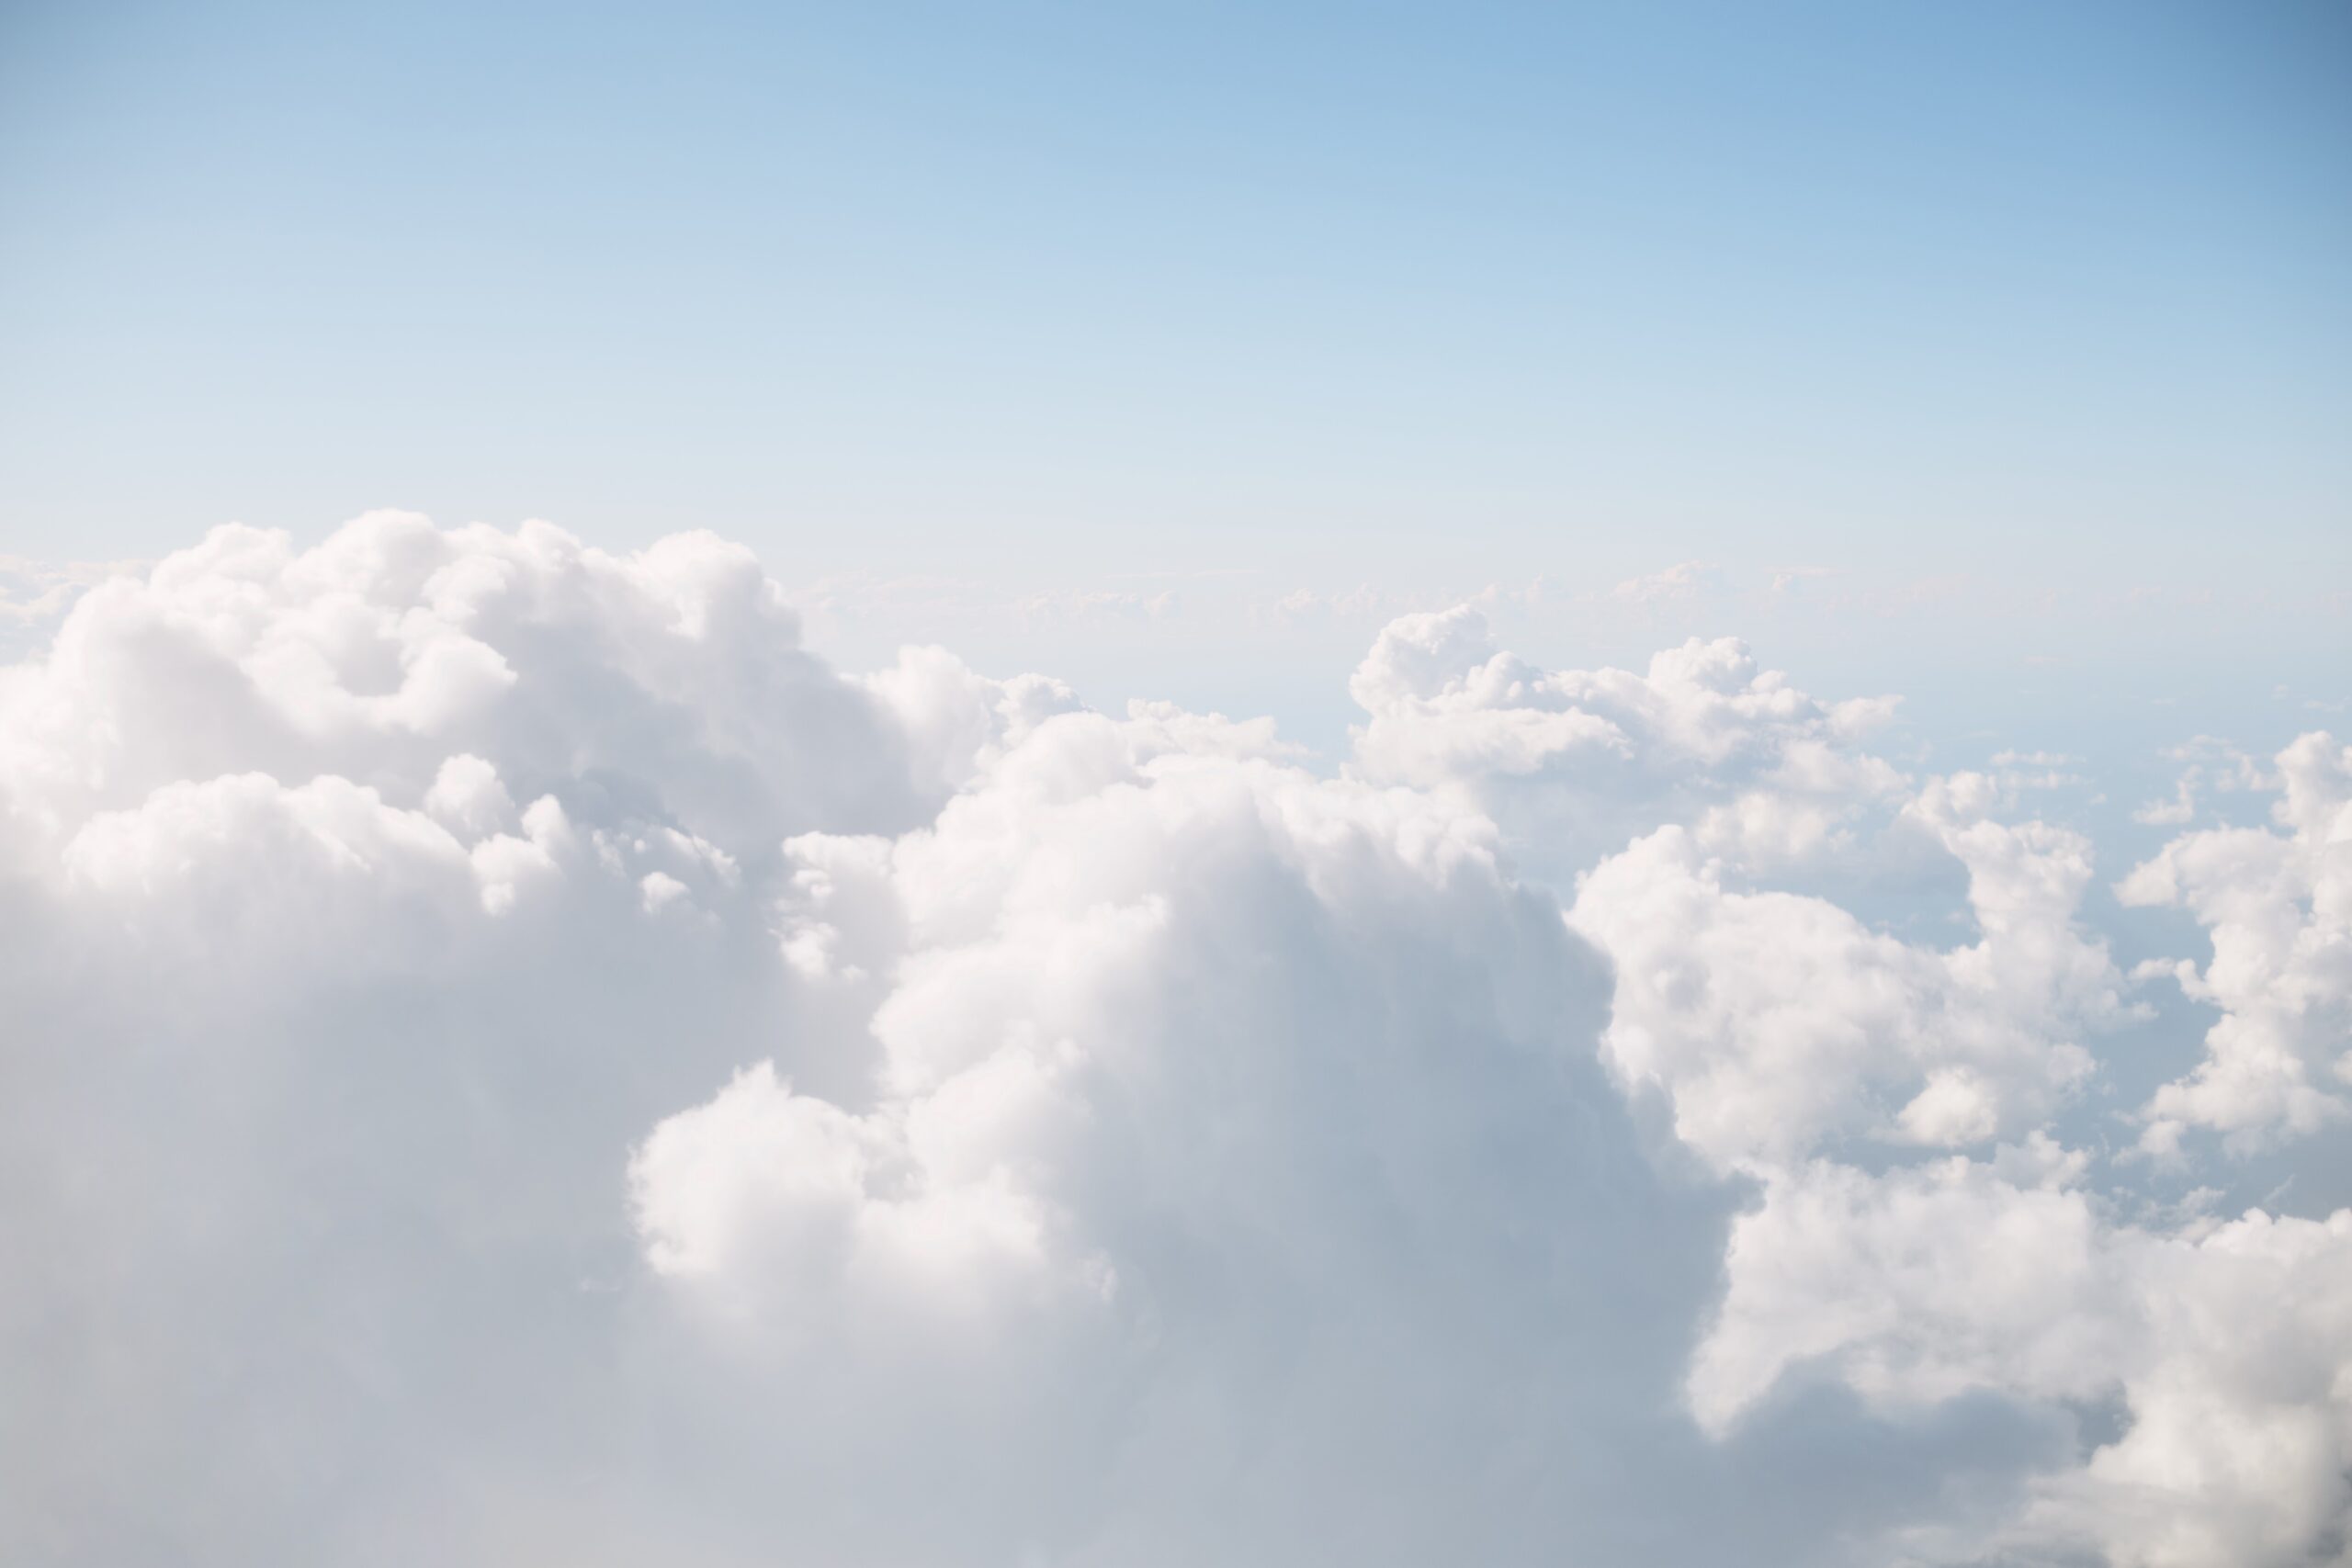 HAN-GINS ETFs verkställande direktör Anthony Ginsberg träffade Steve Darling från Proactive för att diskutera sin Cloud tech fond, HANetf HAN-GINS Cloud Technology Equal Weight UCITS ETF – Acc (5XYE) och dess imponerande prestation i en nyligen genomförd intervju. Cloud Tech ETF har ökat med över 32 % hittills och cirka 20 % under det senaste året, drivet av dess diversifierade portfölj av molninnehav. Till skillnad från andra spelare som enbart fokuserar på USA, har denna ETF en global strategi med 15 % av sin vikt i Asien. Konvergensen av AI och molnteknik har avsevärt bidragit till dess framgång, med spelare som Palo Alto Networks och videostreamingplattformar som gynnats. Noterbart är att Microsoft-Activision-förvärvet också ses som ett molnspel.